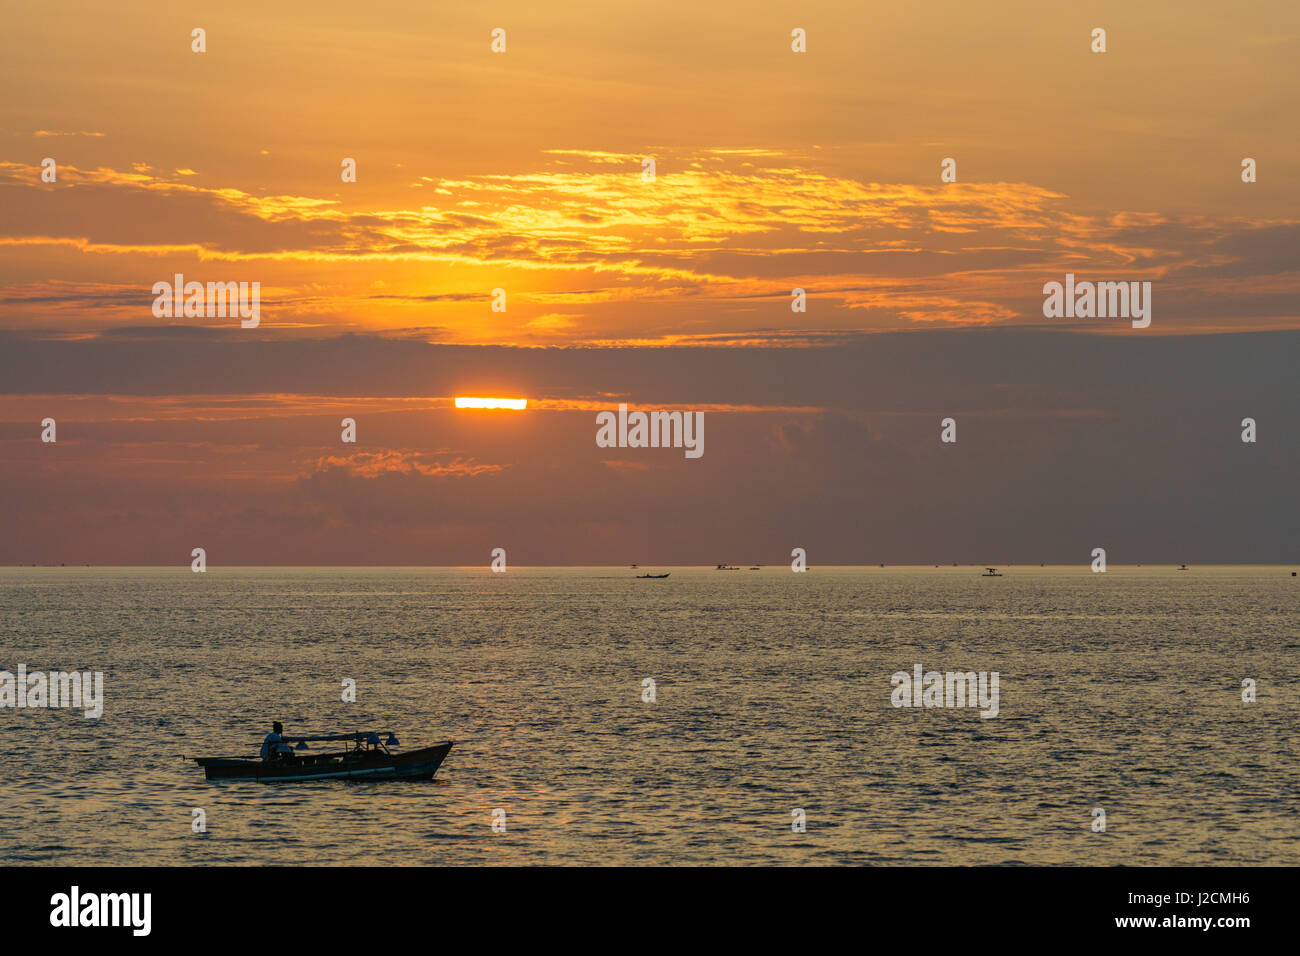 L'Indonésie, Sulawesi Utara, Kota Manado, bateau de pêche au coucher du soleil sur le lac silent à Manado sur Sulawesi Utara Banque D'Images